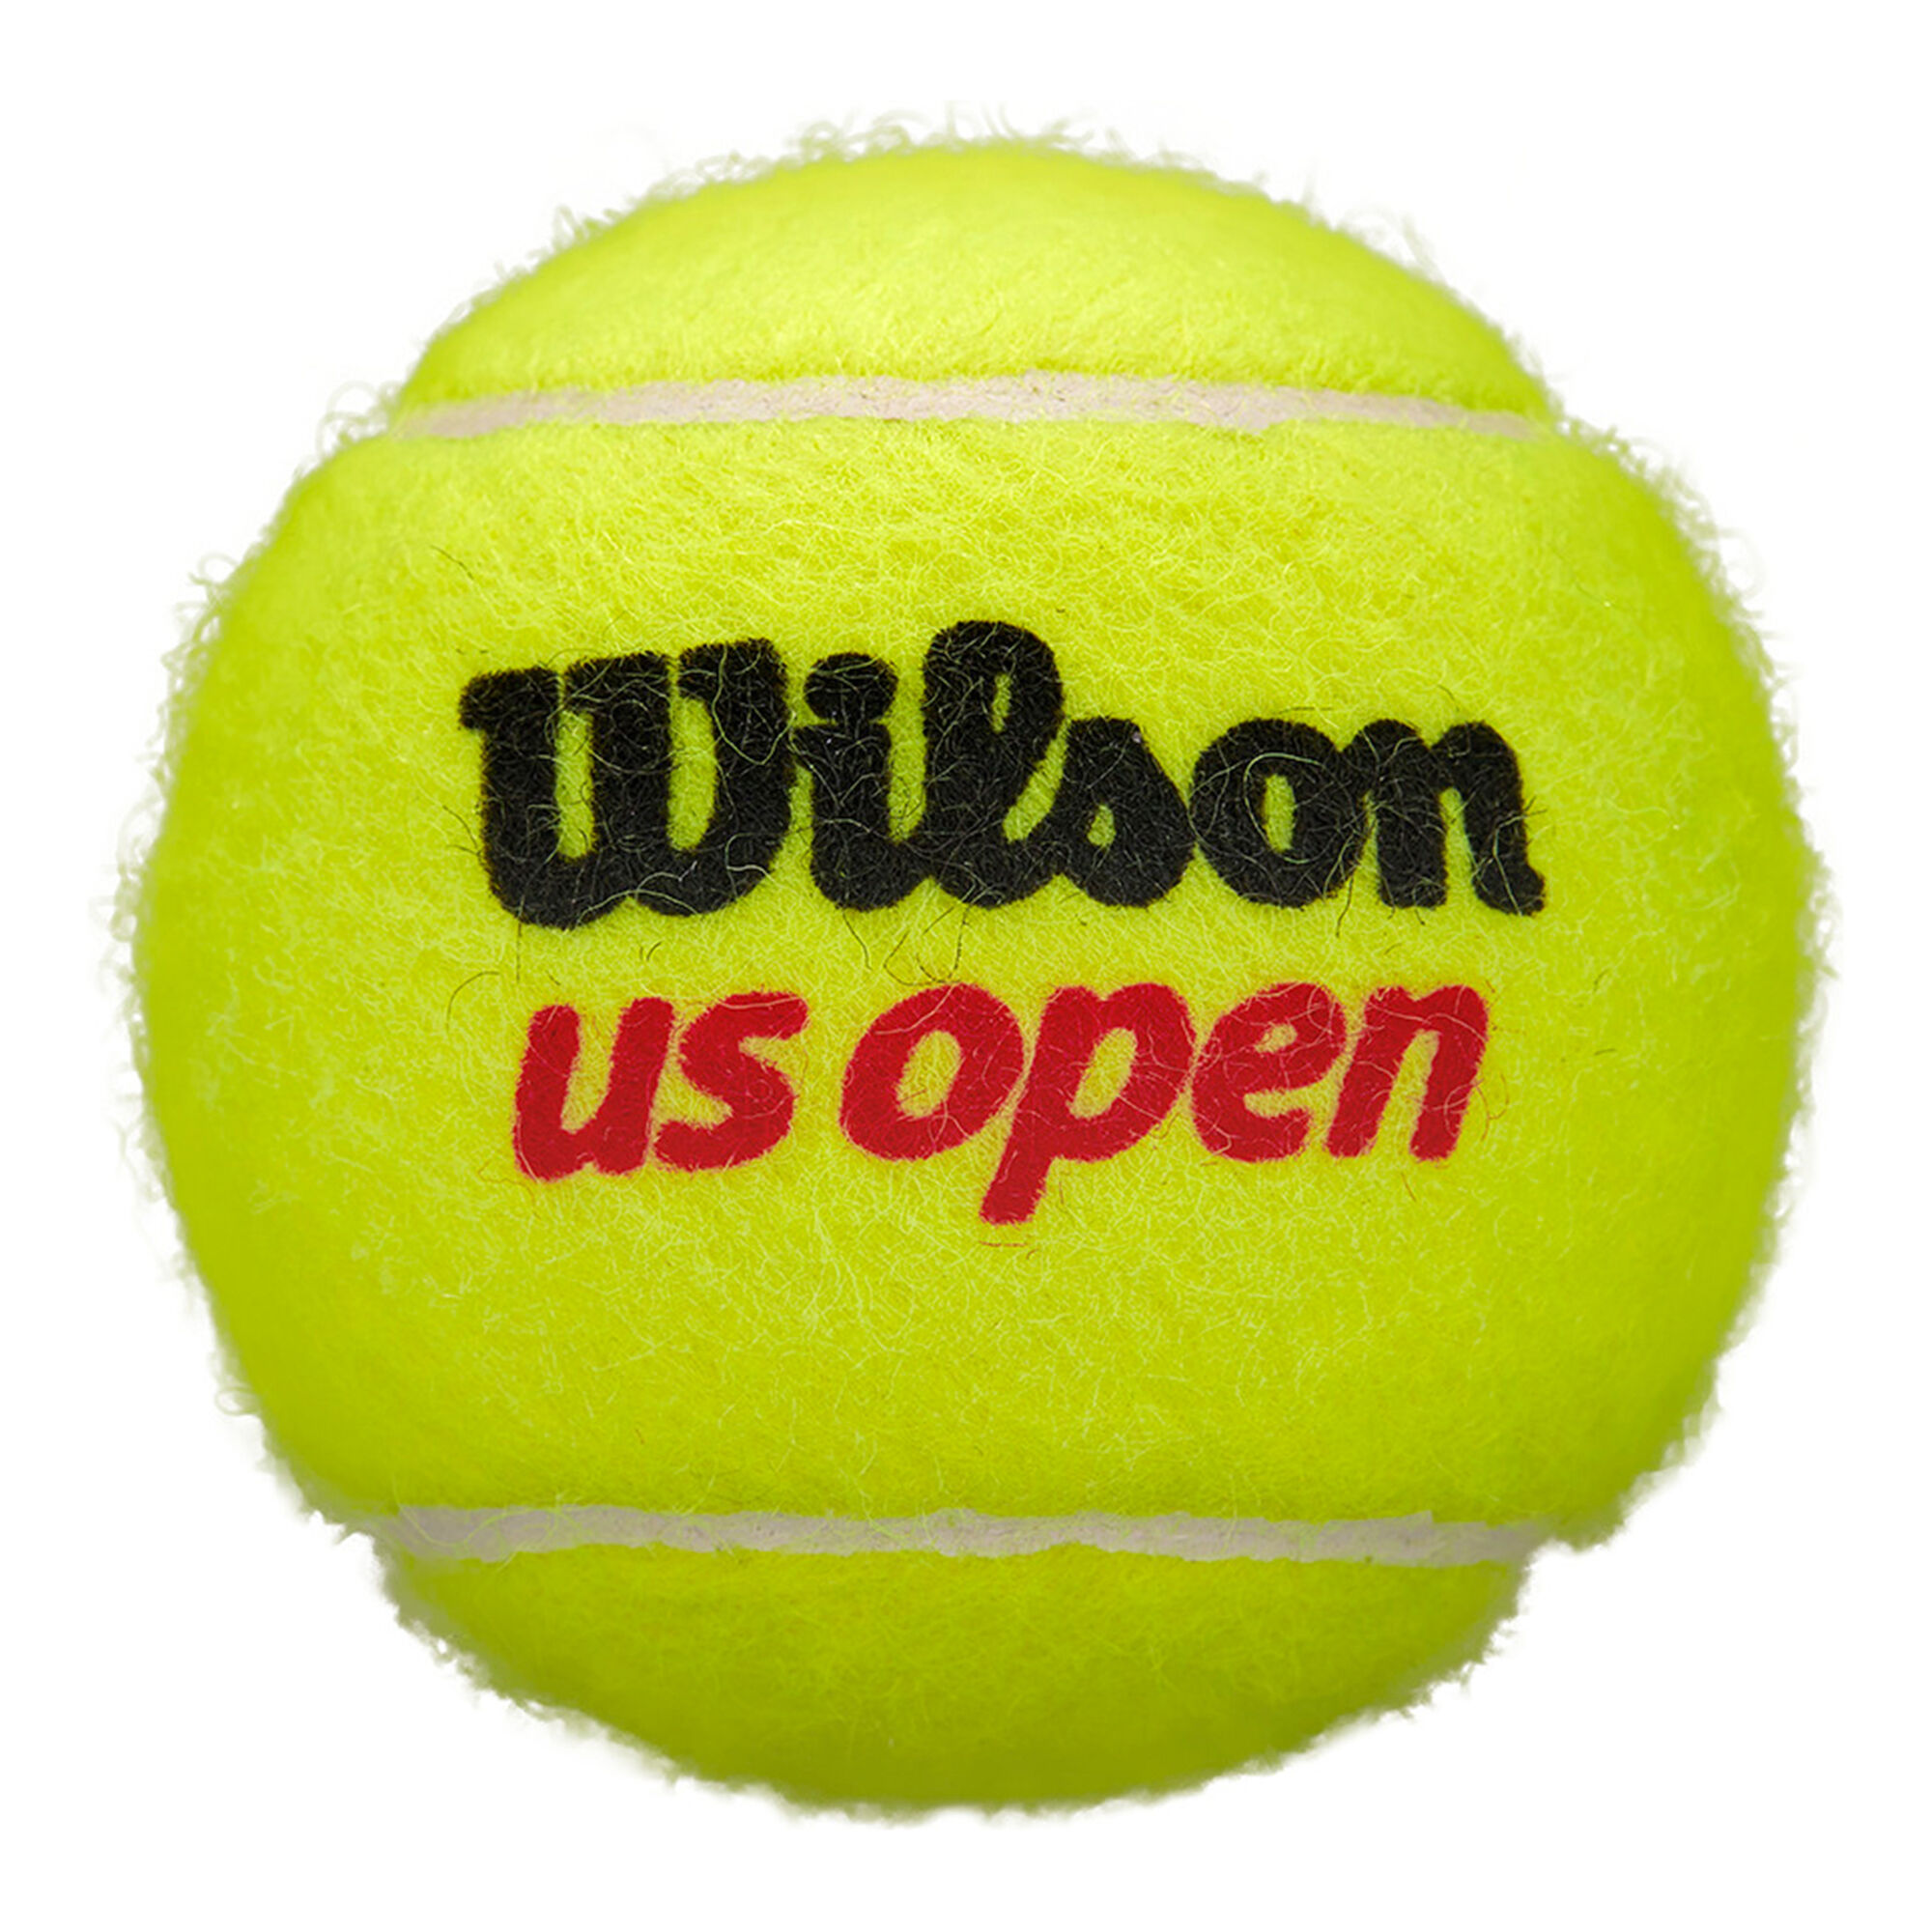 Buy Wilson US Open 3 Ball Tube online